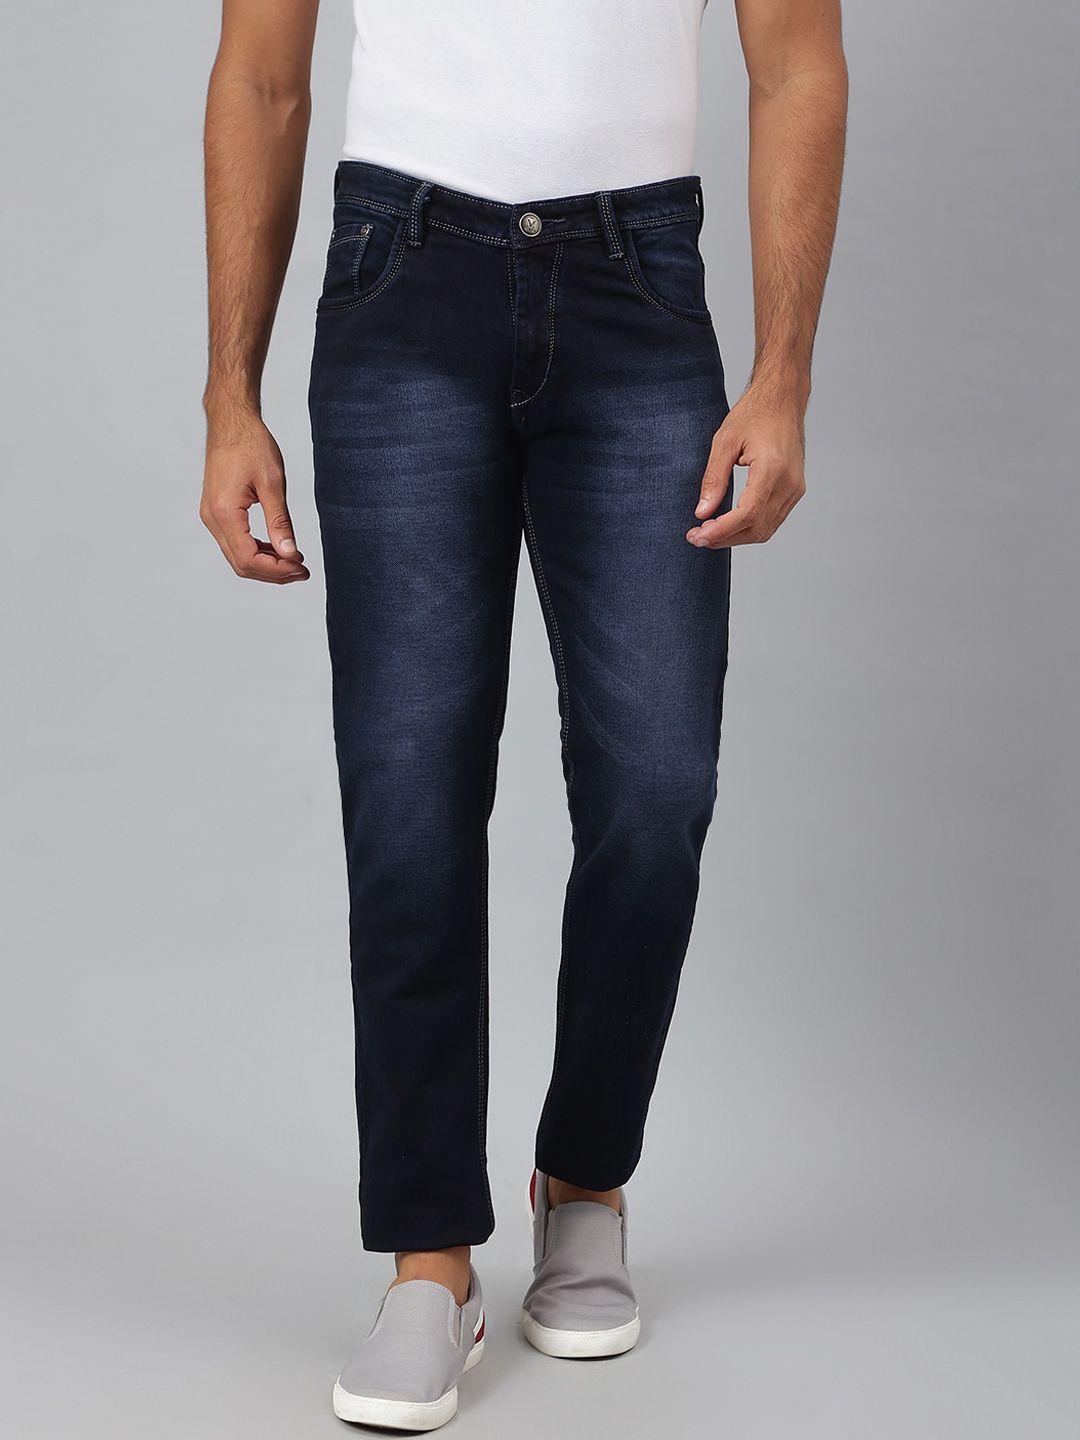 mr-button-men-navy-blue-slim-fit-light-fade-cotton-jeans